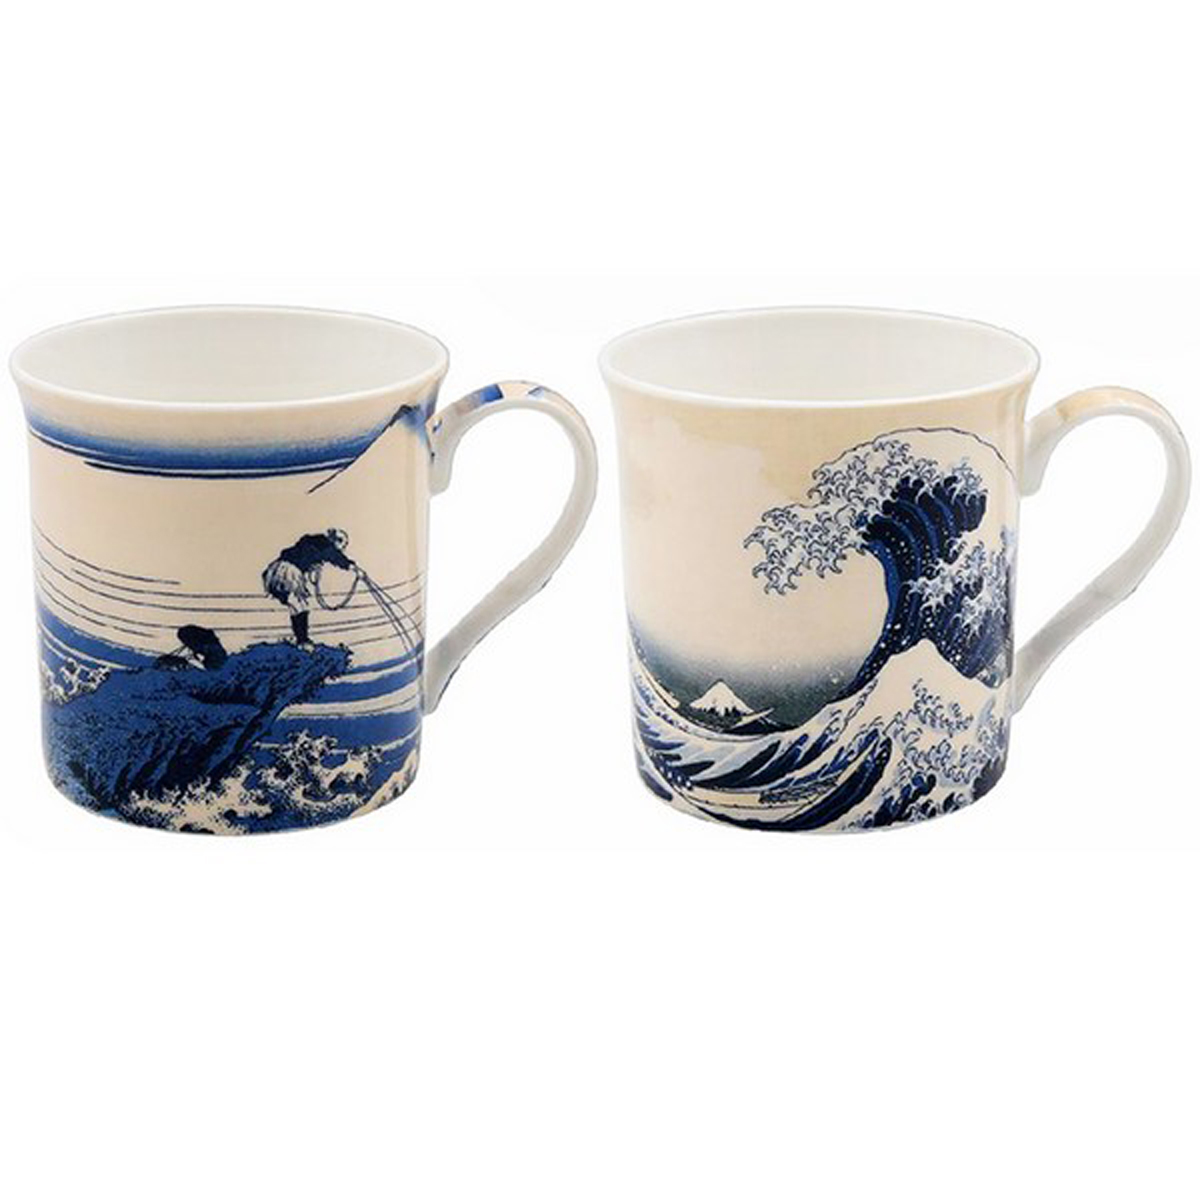 Coffret cadeau porcelaine \'Hokusai\' (2 mugs) - 85x85 mm (La Grande Vague de Kanagawa) - [A0201]